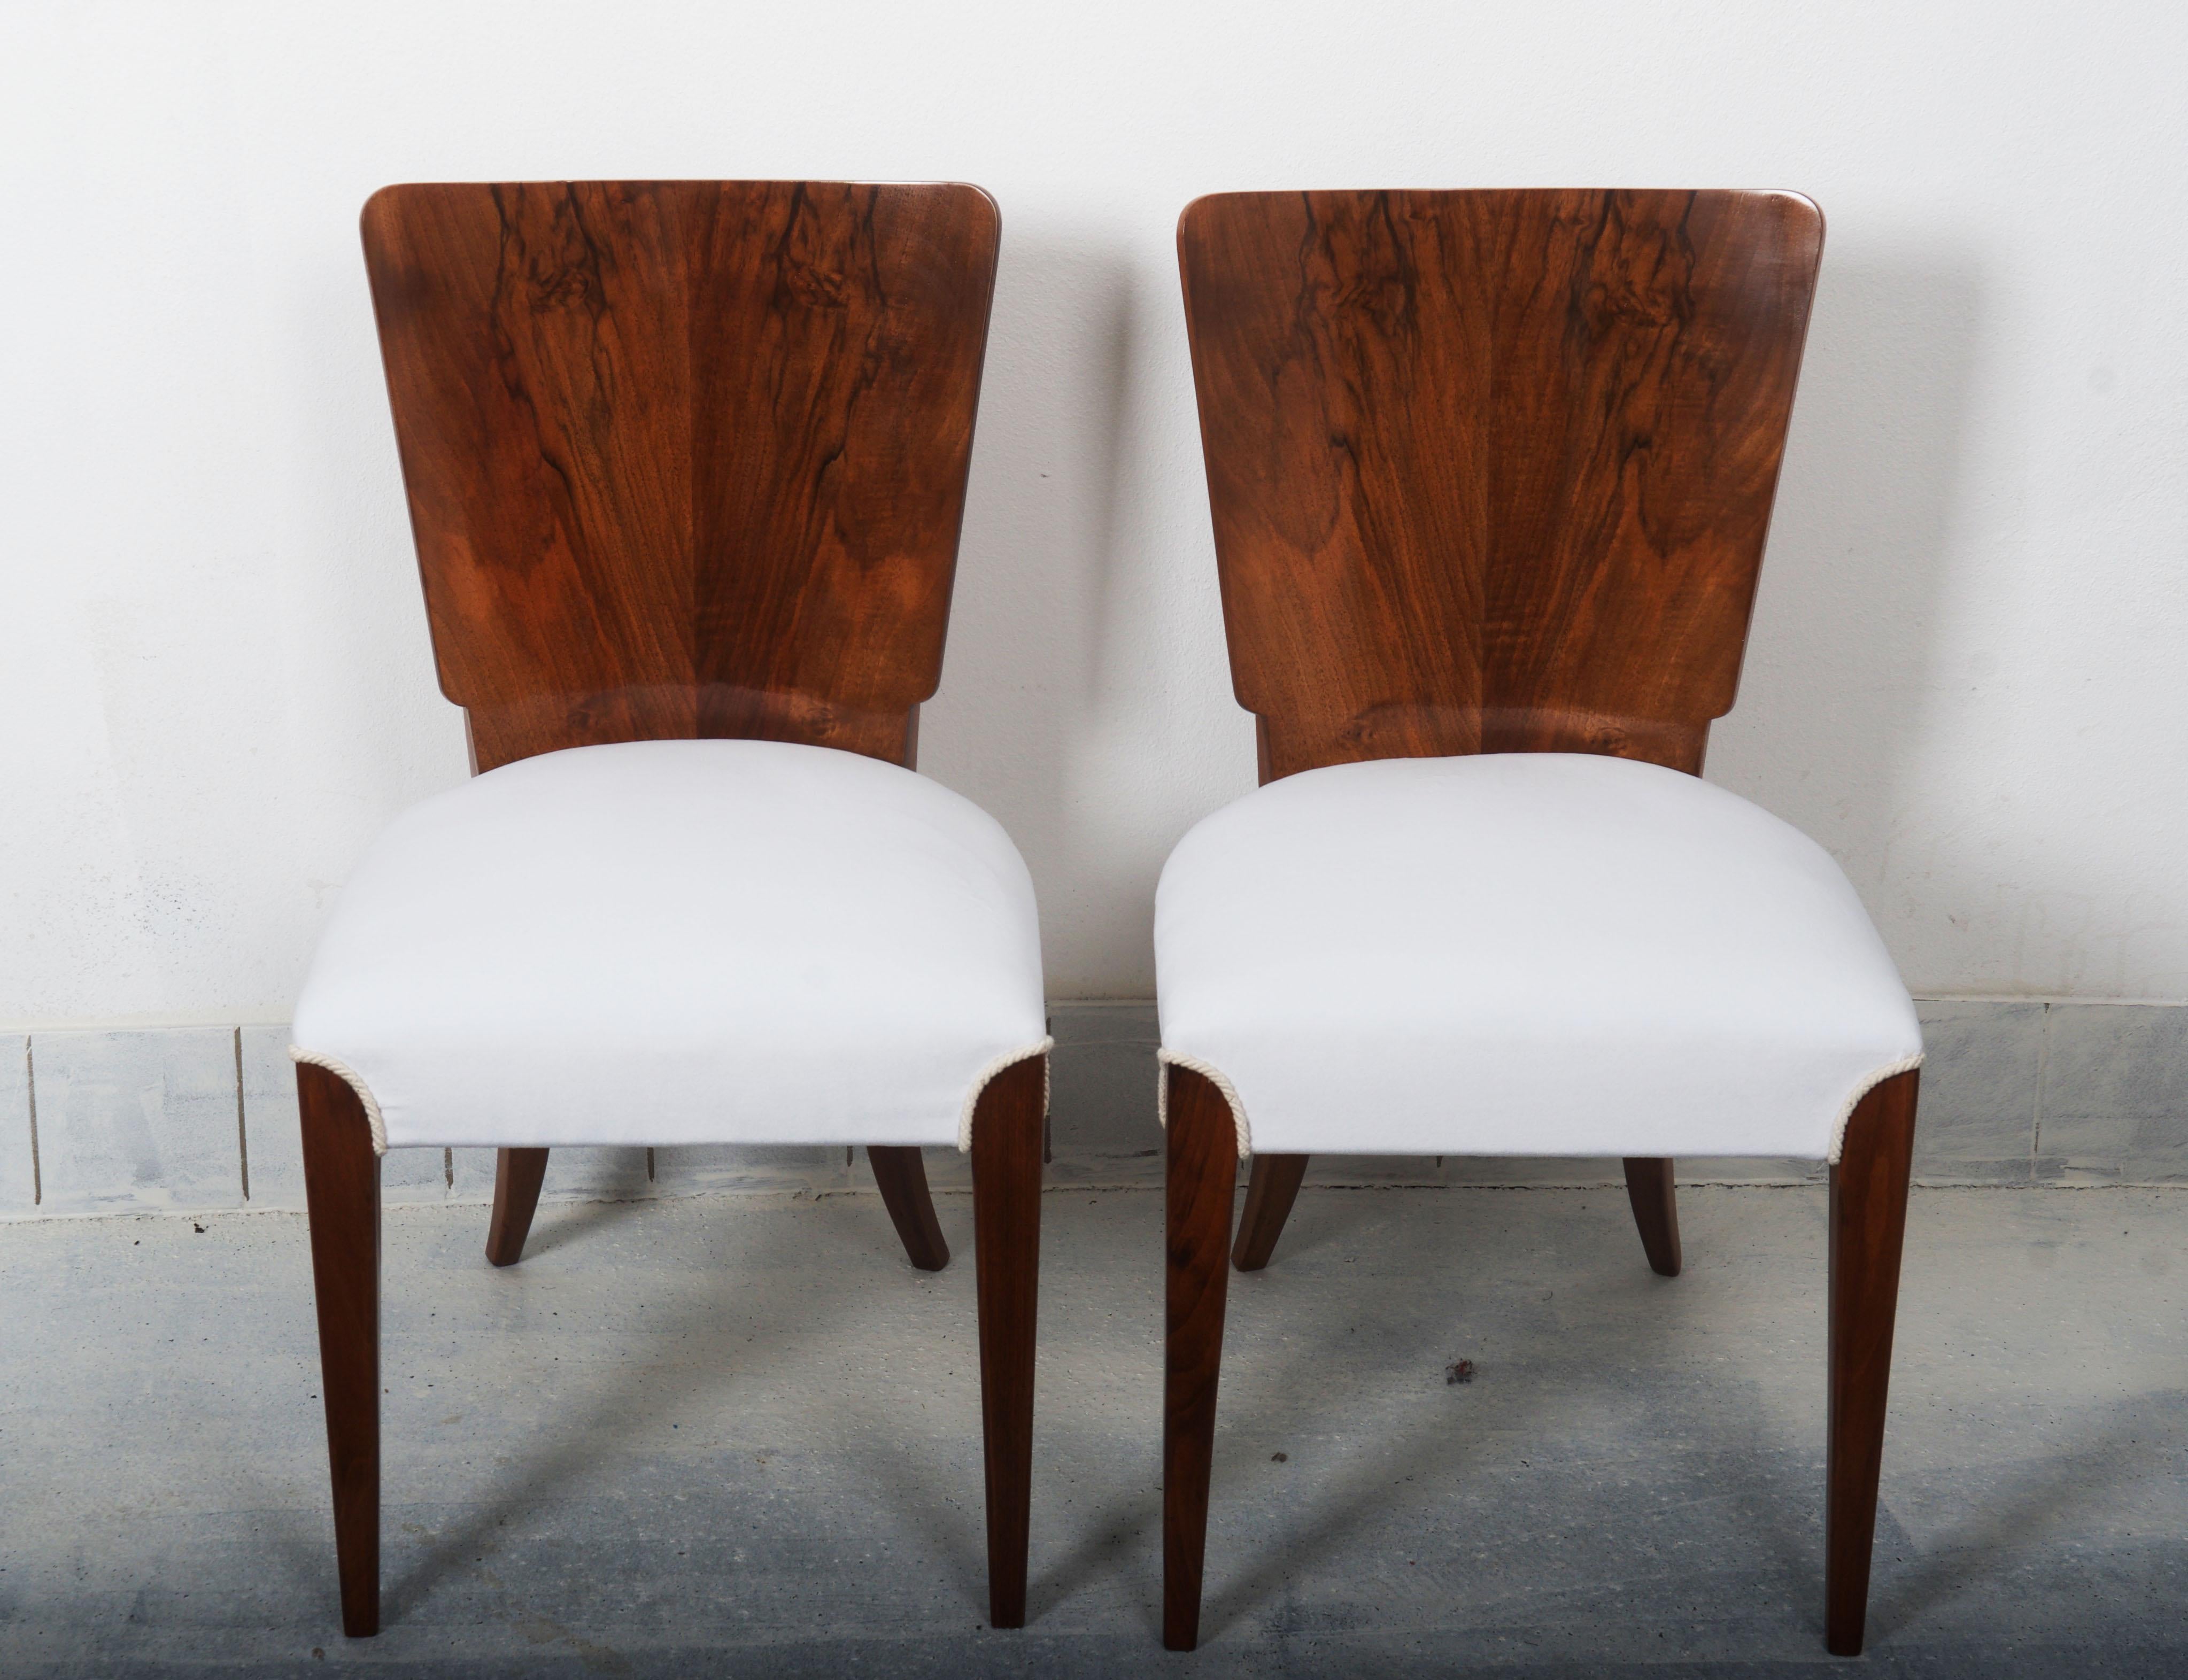 Art Deco Stühle entworfen in den 1930er Jahren von Jindrich Halabala mit der Katalognummer. H214.
Es sind 14-20 Stück. Verfügbar, aber nicht restauriert.
Die Bilder zeigen die letzten Exemplare, die bereits verkauft wurden.
Die Lieferzeit für die